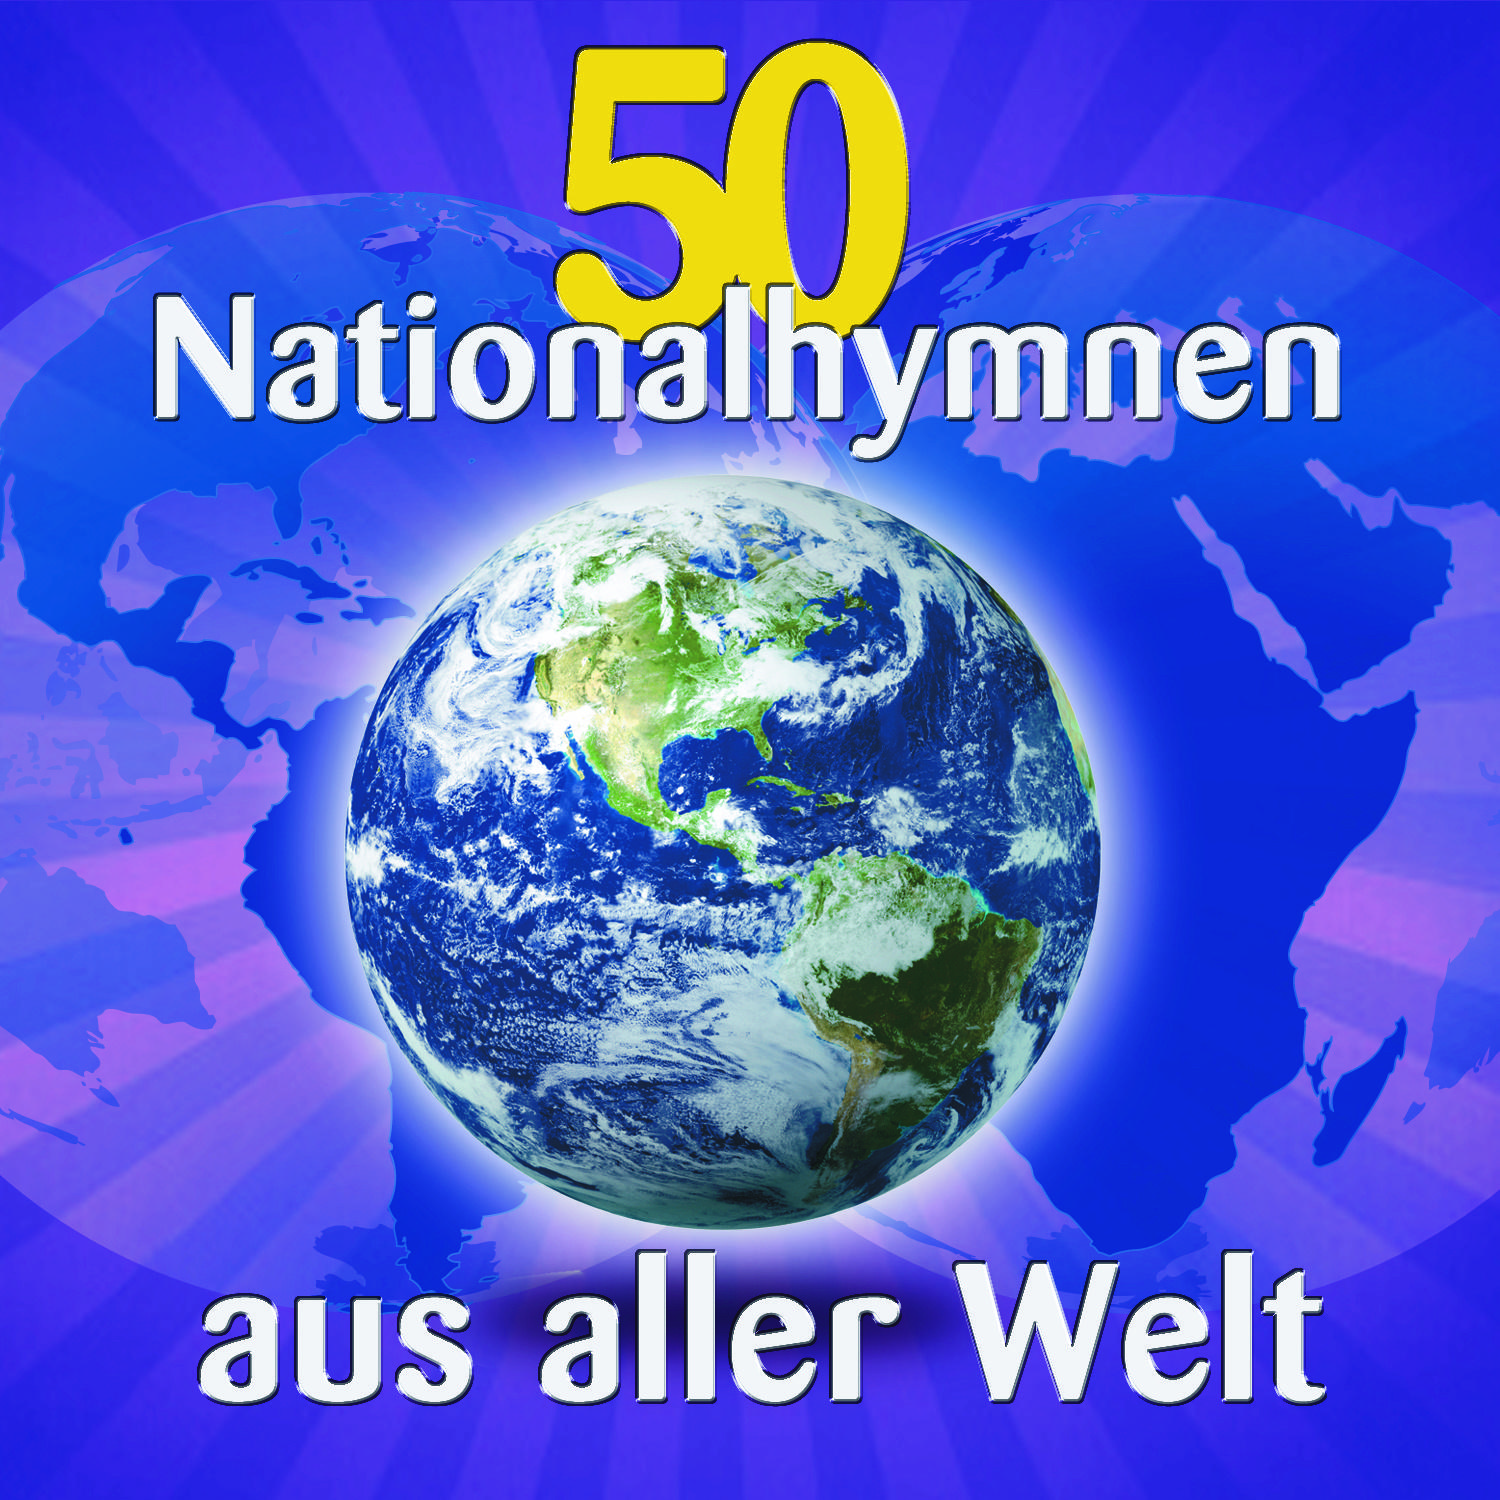 50 Nationalhymnen aus aller Welt专辑